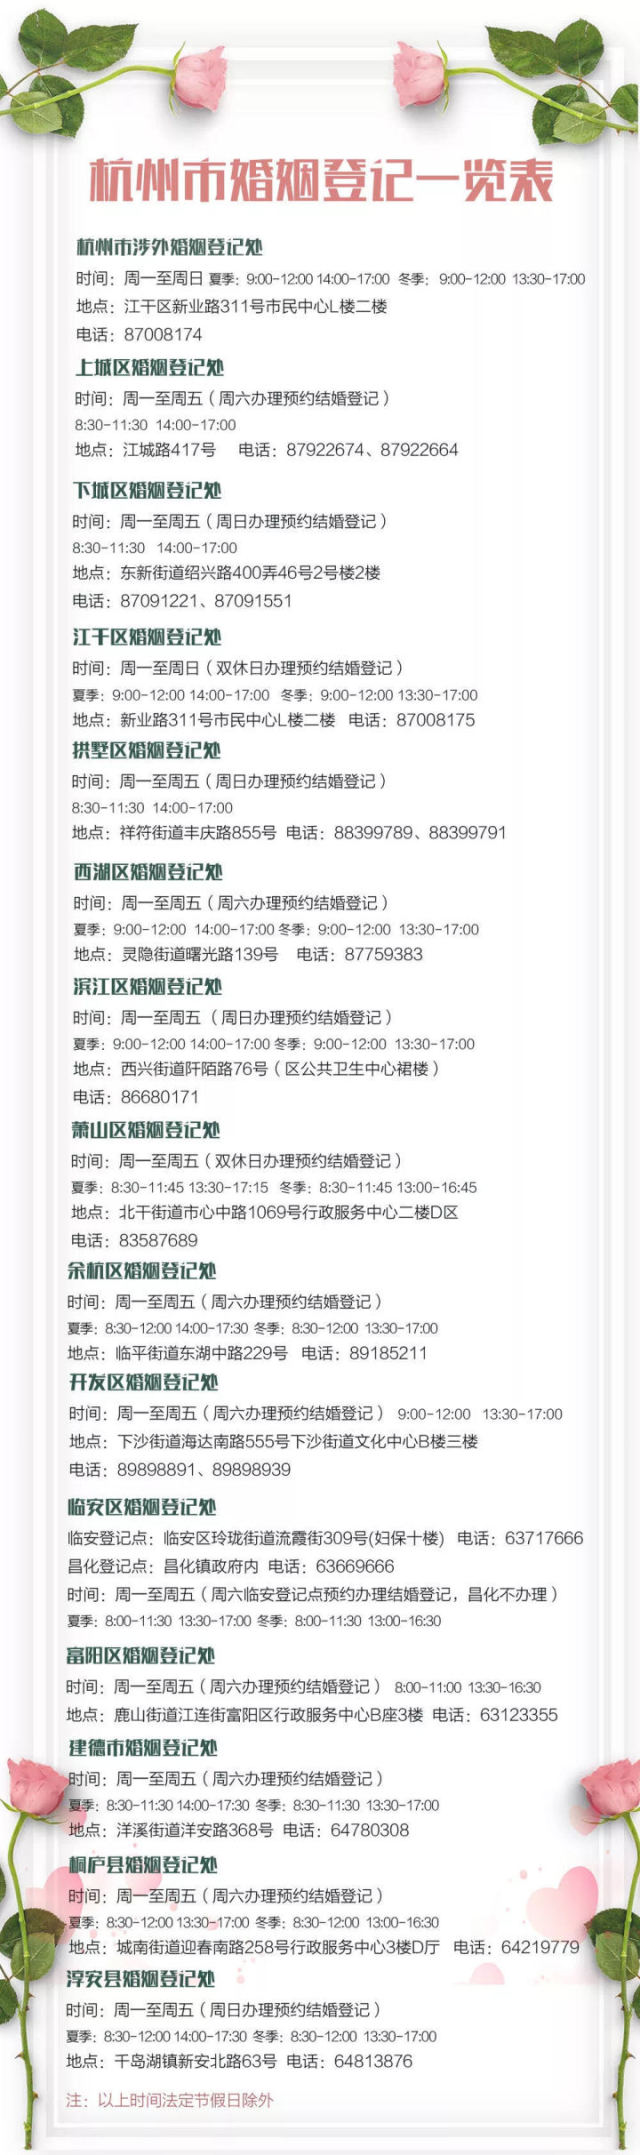 2021年3月14日,杭州有六个地方可领结婚证